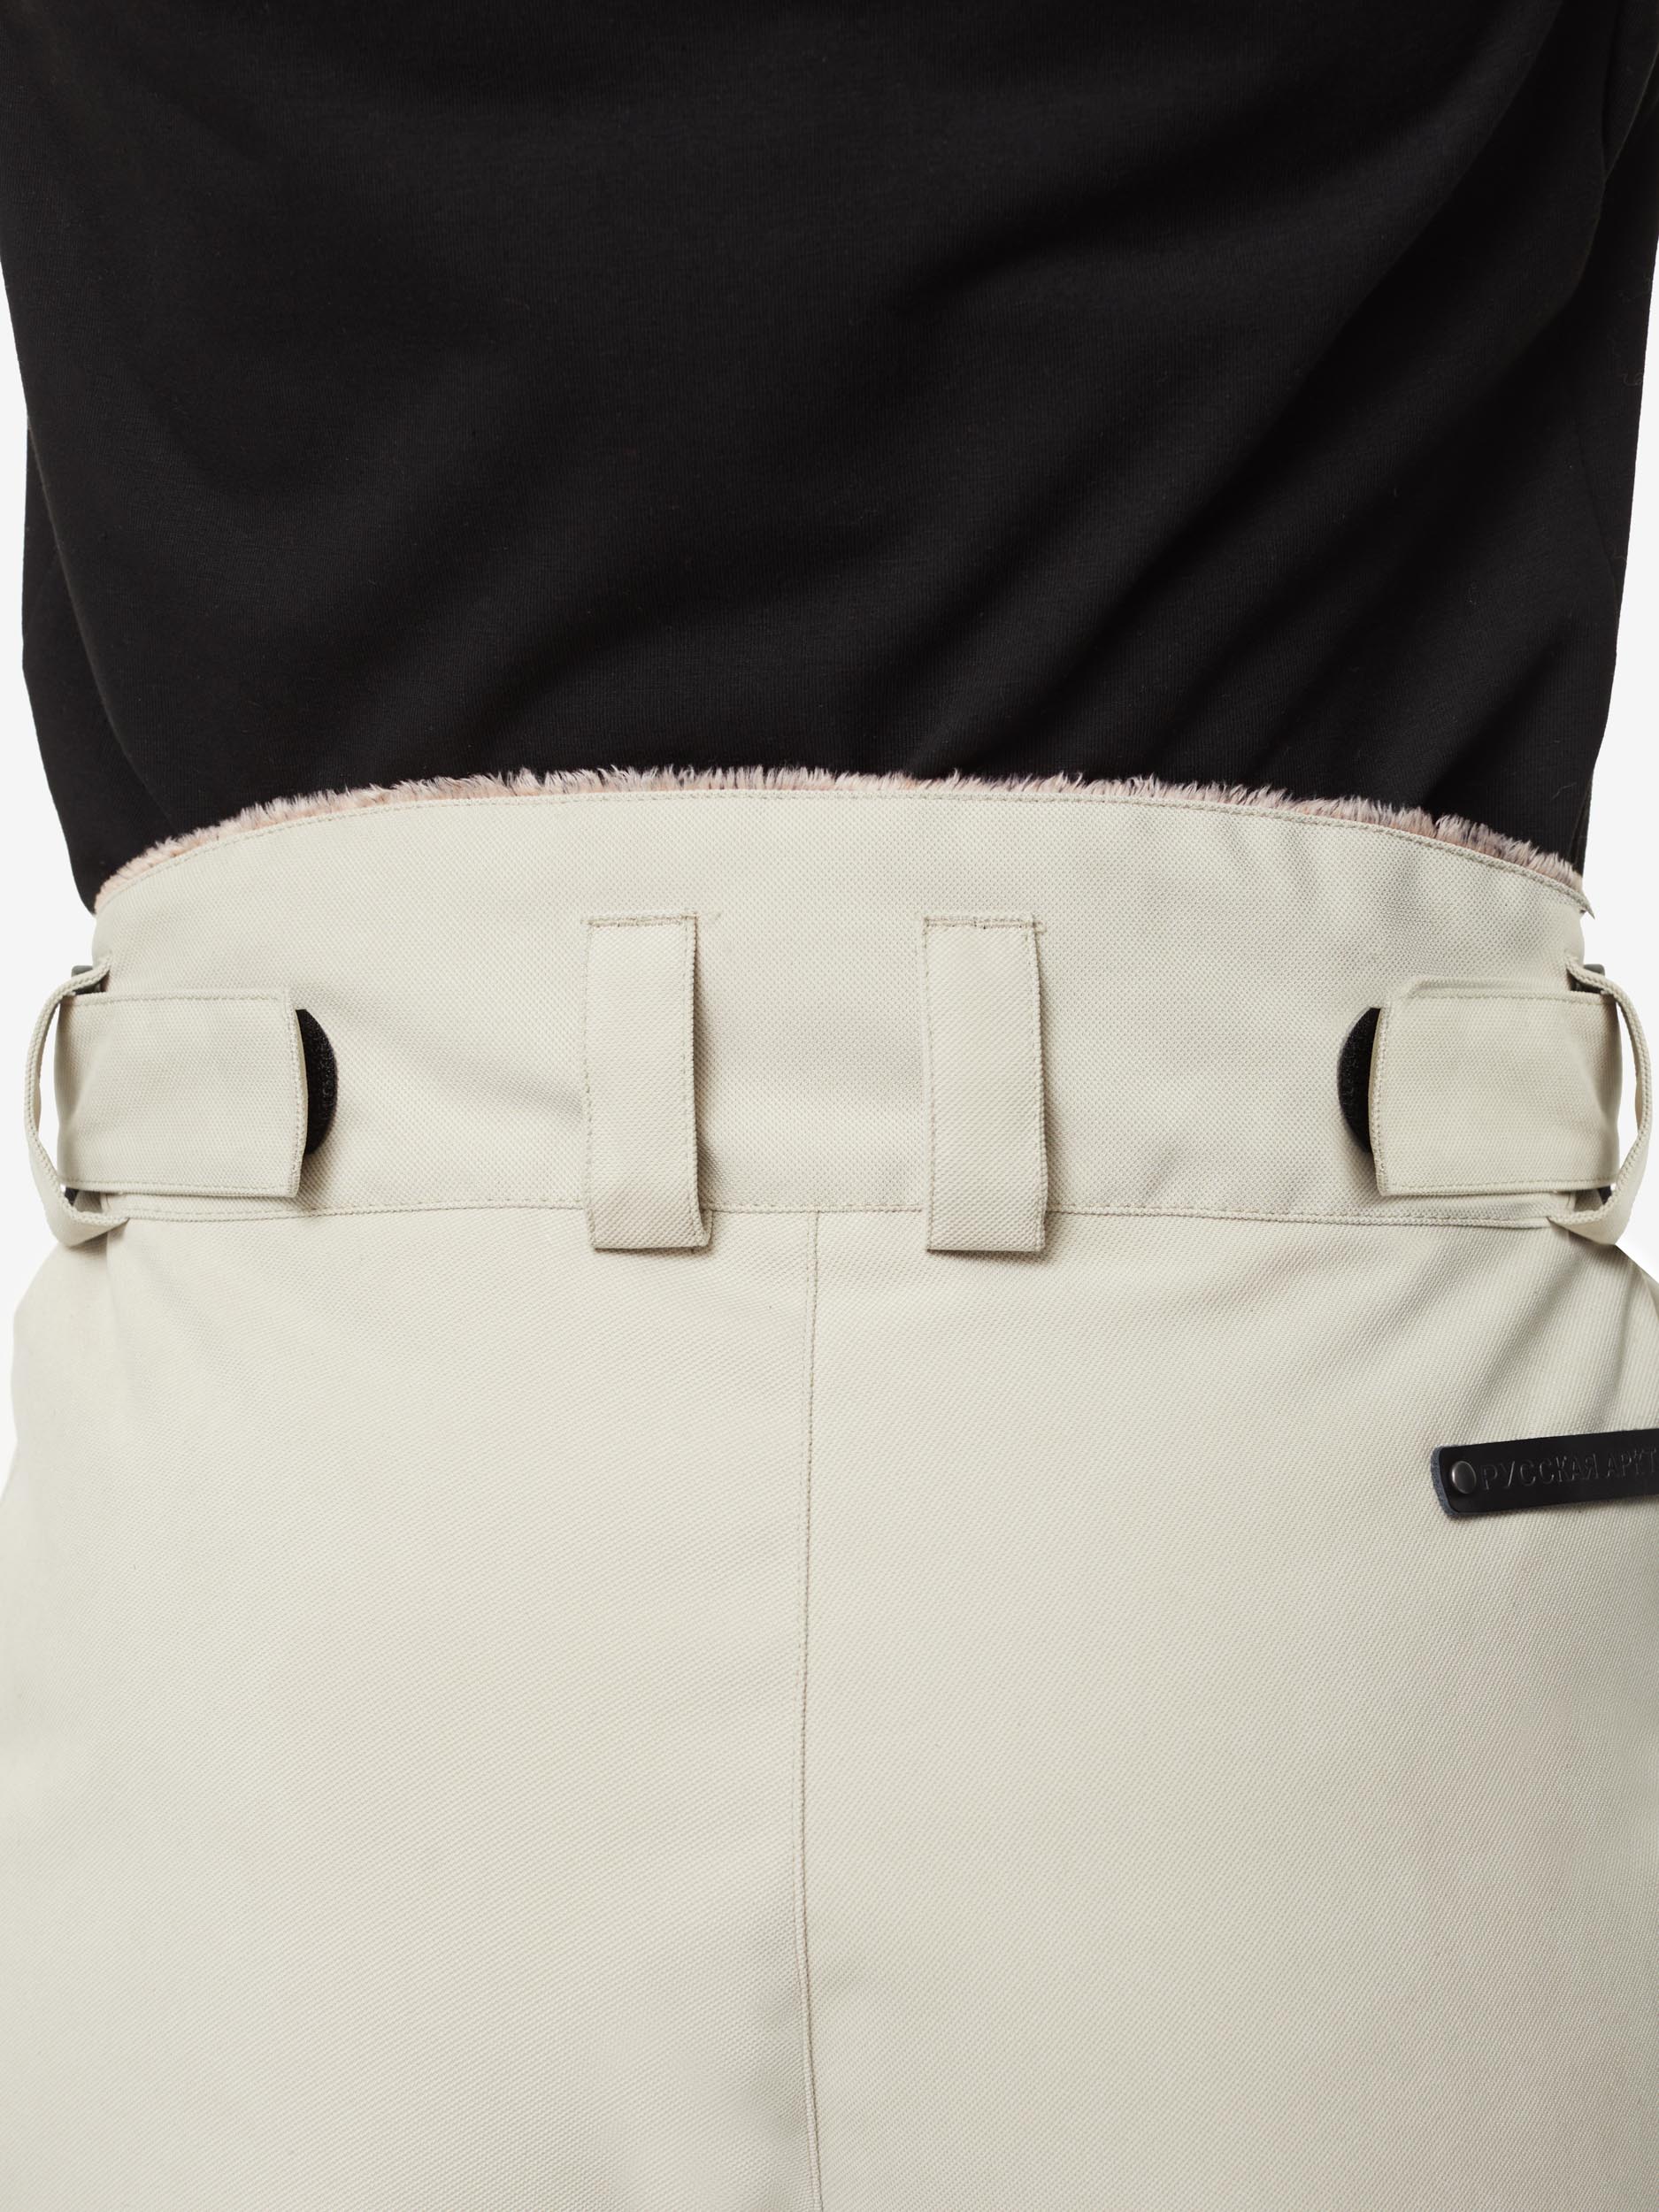 Пуховые брюки BASK, размер 50, цвет коричневый 3780-9905-050 MANARAGA - фото 4